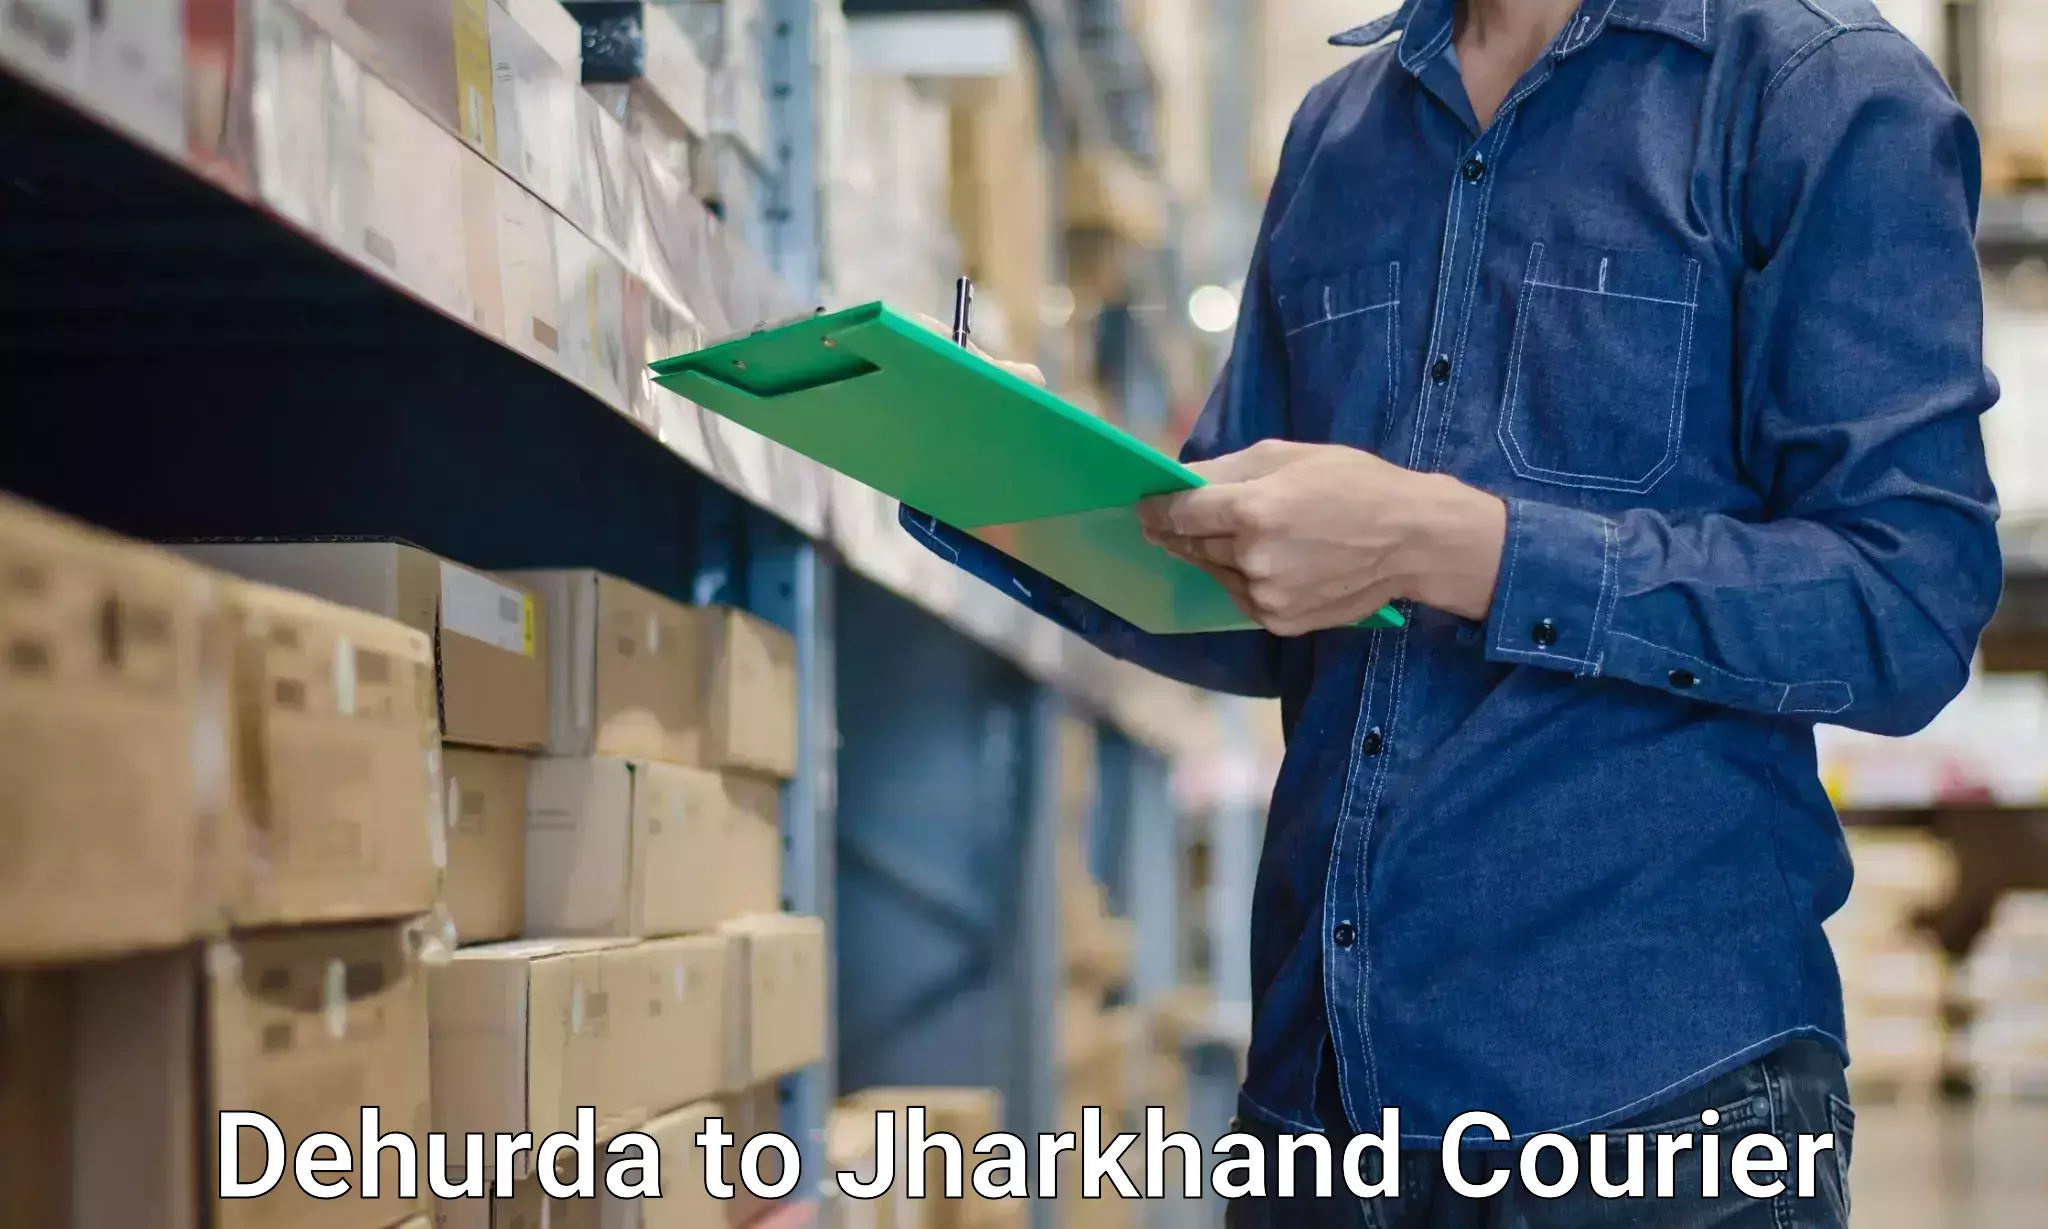 Furniture transport specialists Dehurda to Jharkhand